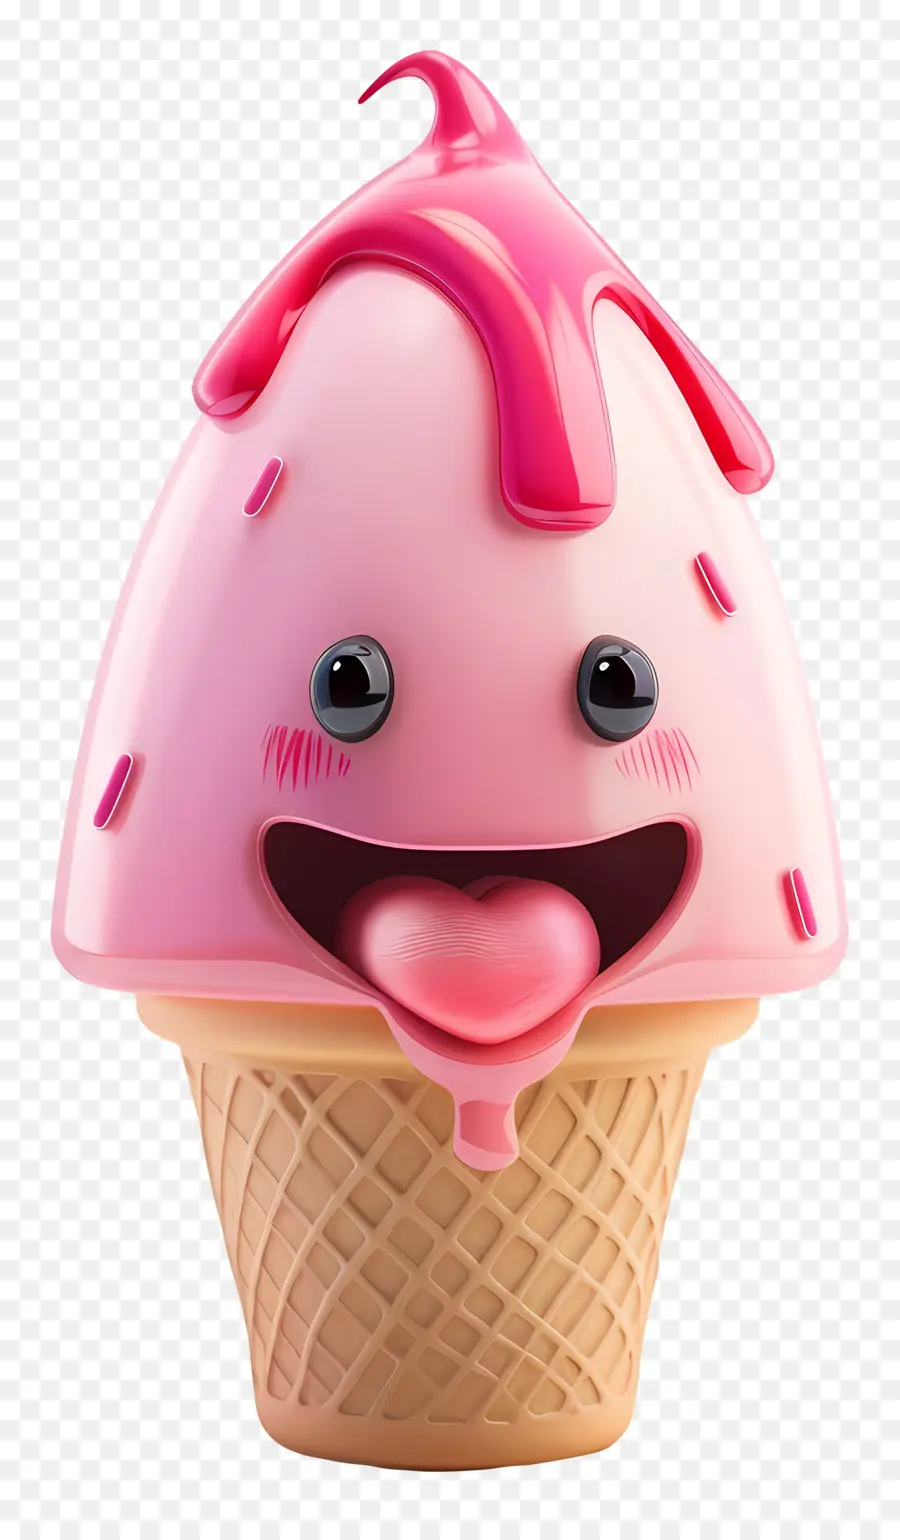 Phim hoạt hình 3d Dessert Pink Ice Cream Cone Whipped Cream Cherry Topping Dessert - Hình nón kem màu hồng với topping anh đào